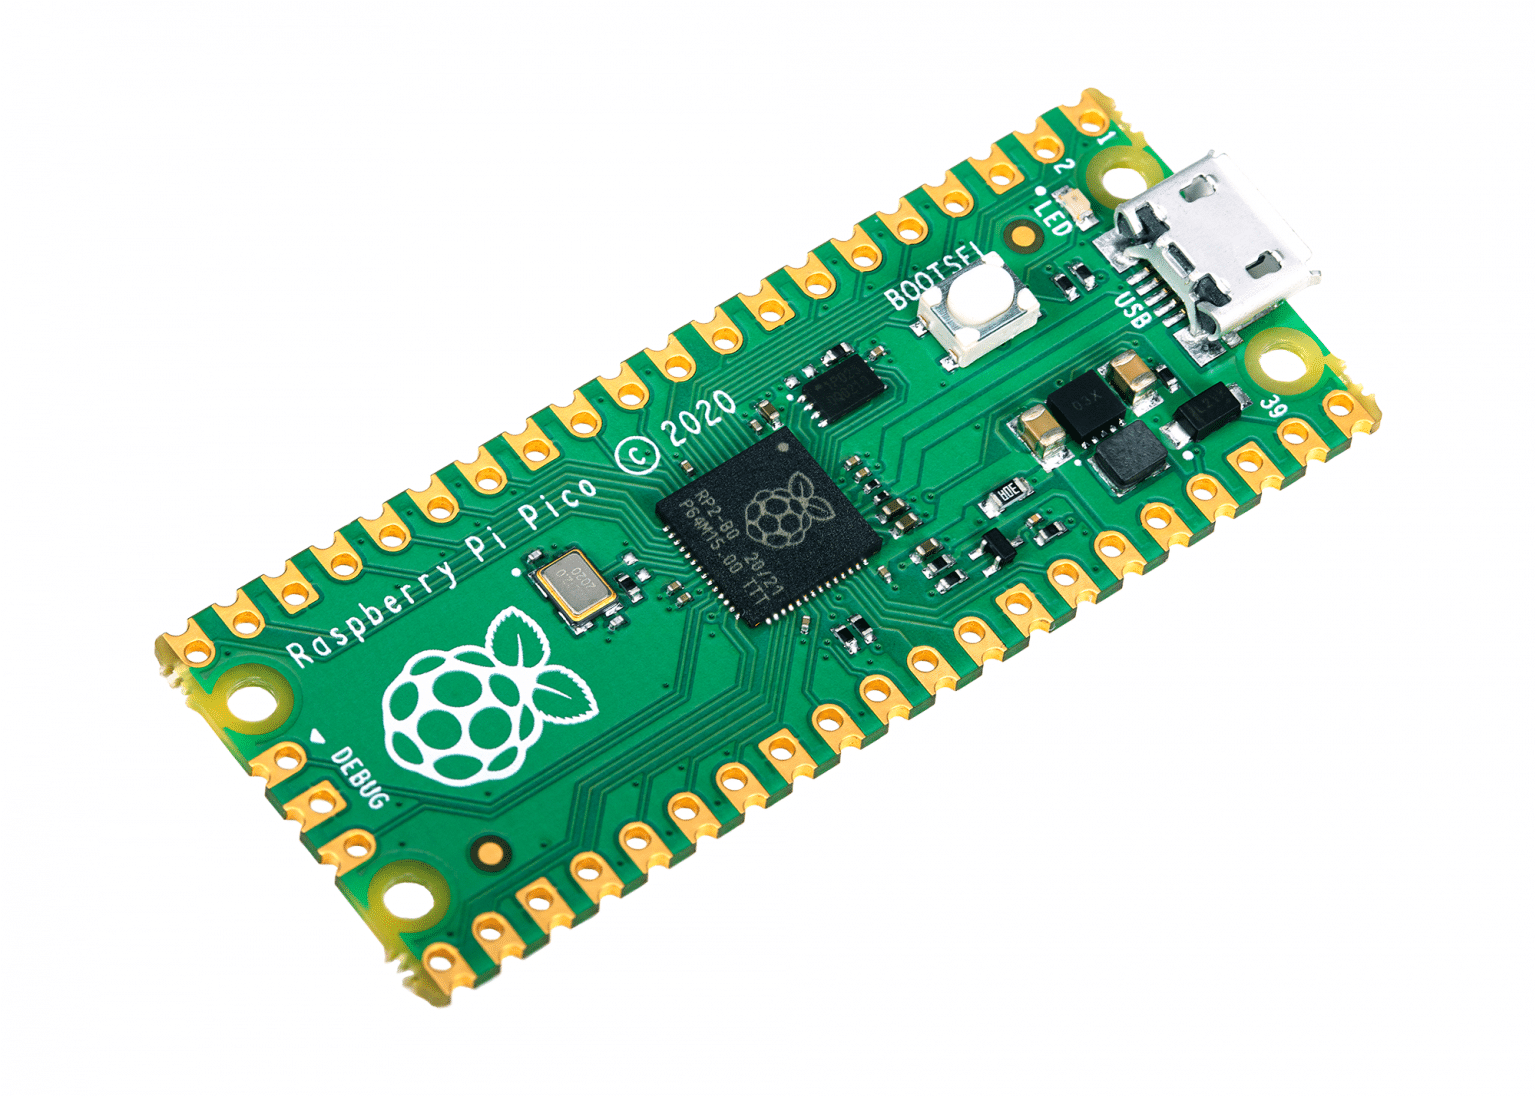 Raspberry Pi Foundation anunciou seu próprio chip microcontrolador